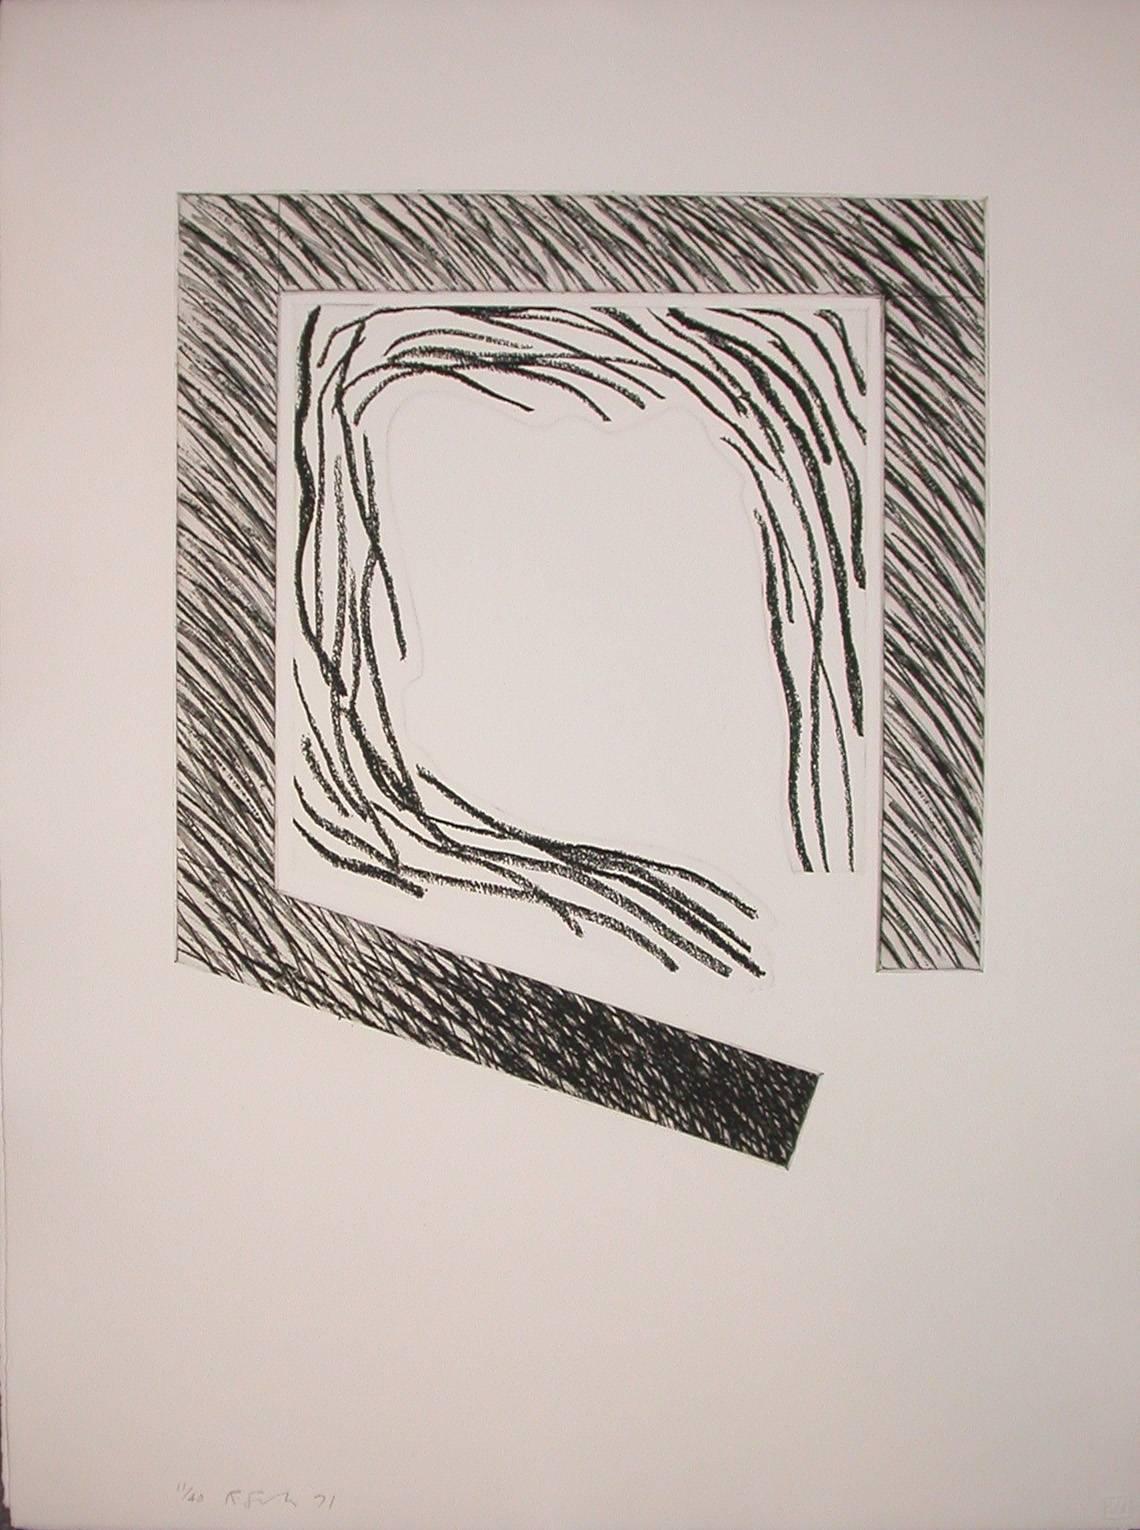 Richard Smith Print – Proscenium I (Quadratischer Rand um lose Linien)